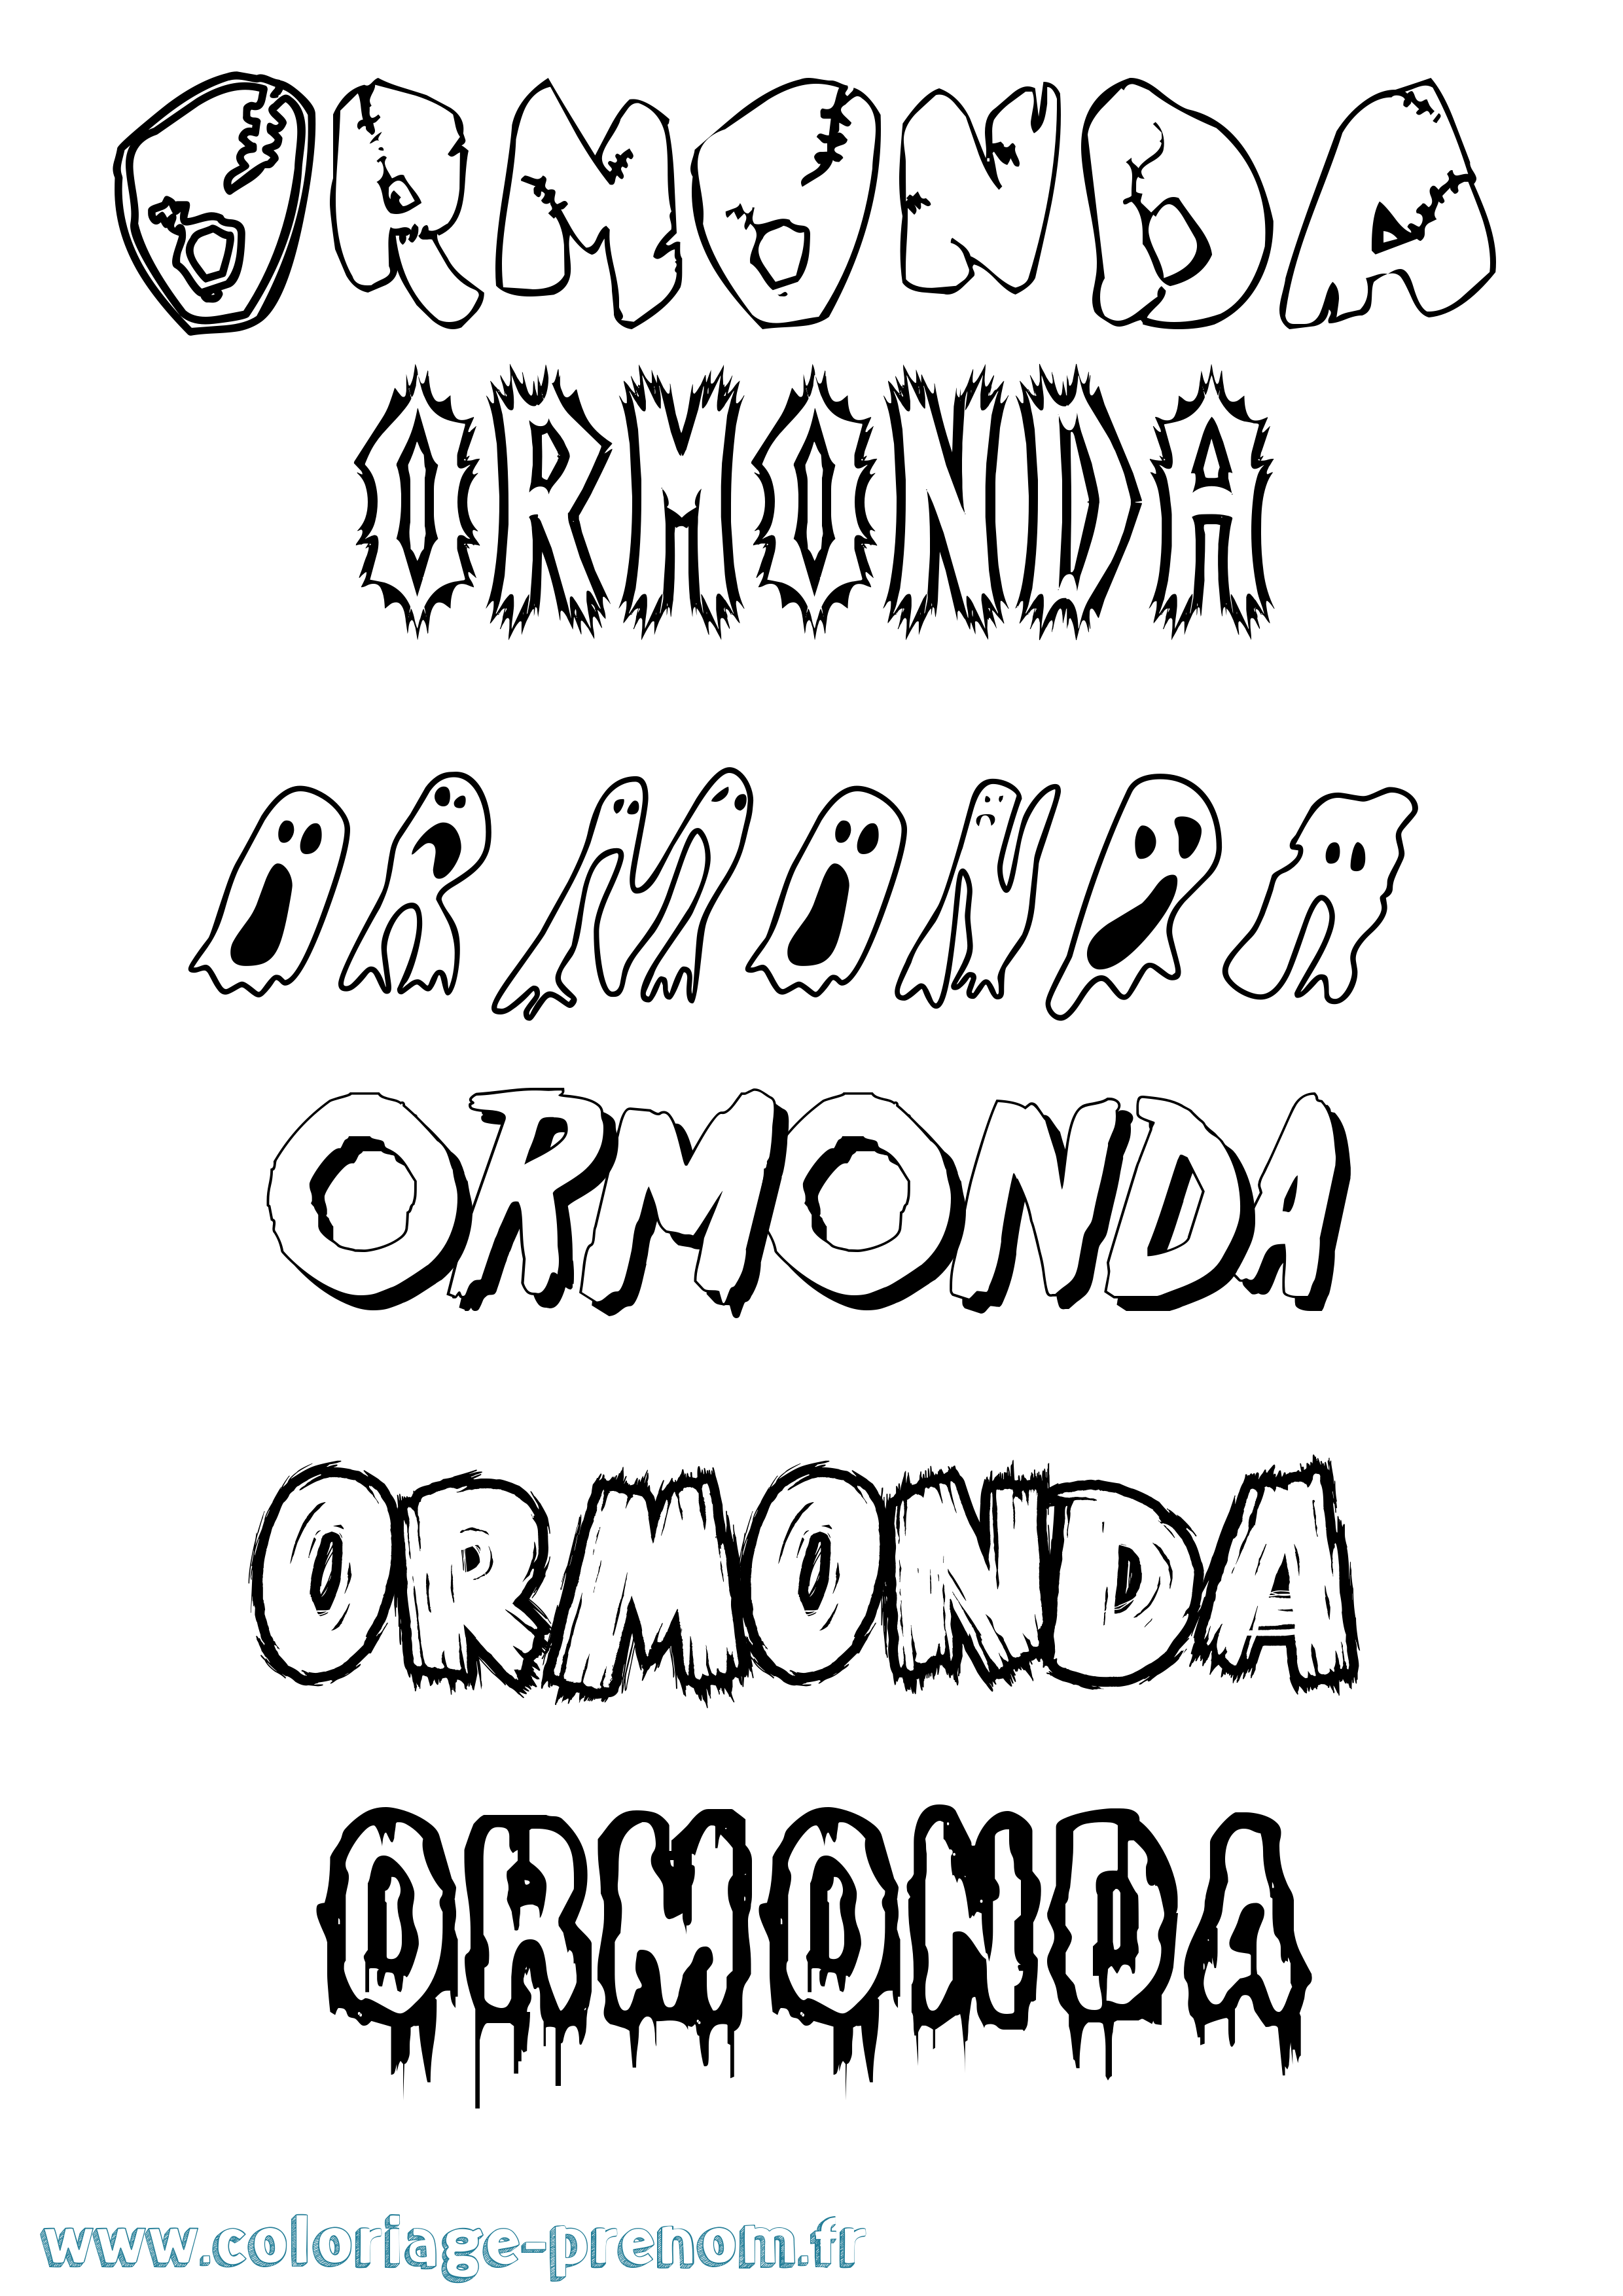 Coloriage prénom Ormonda Frisson